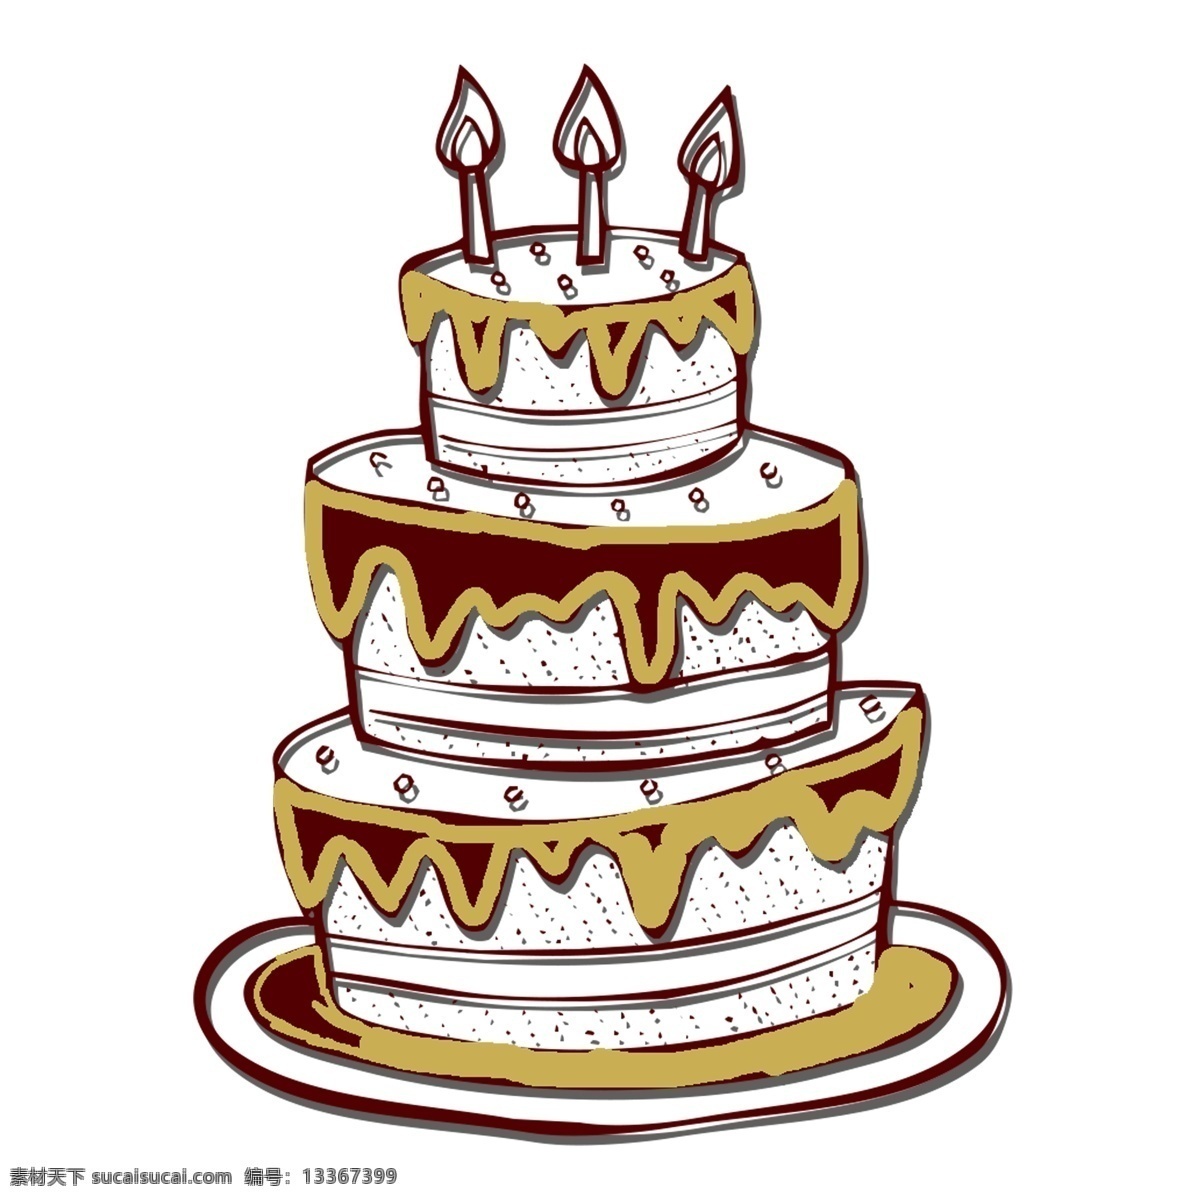 粉色 卡通 生日蛋糕 免 抠 元素 生日派对 手绘 奶油 甜品元素